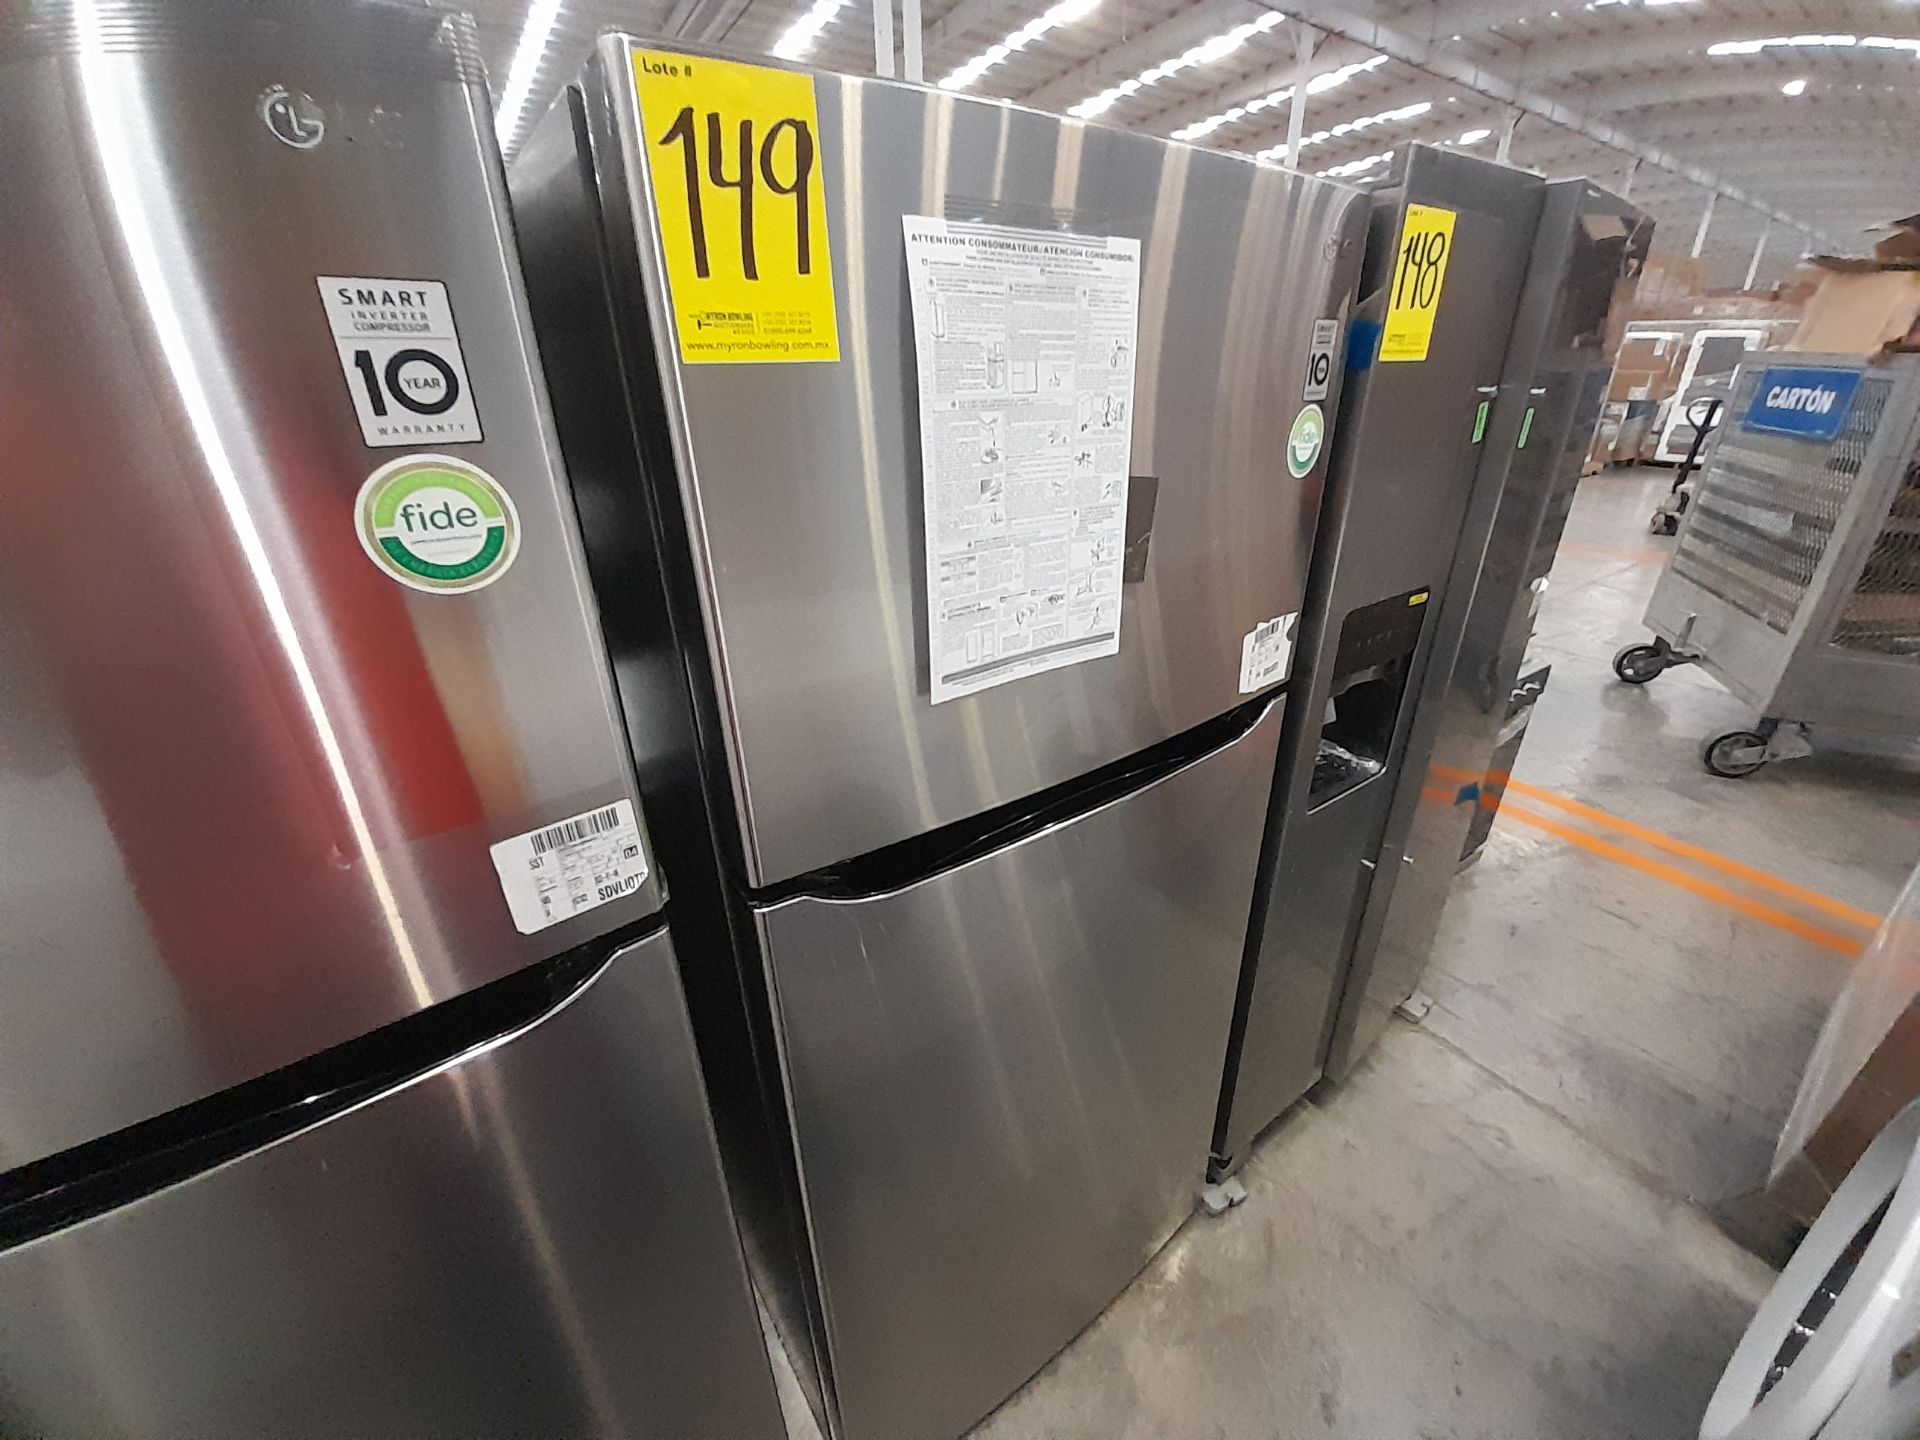 (NUEVO) Lote de 1 Refrigerador Marca LG, Modelo LT57BPSX, Serie V0F033, Color GRIS - Image 2 of 5